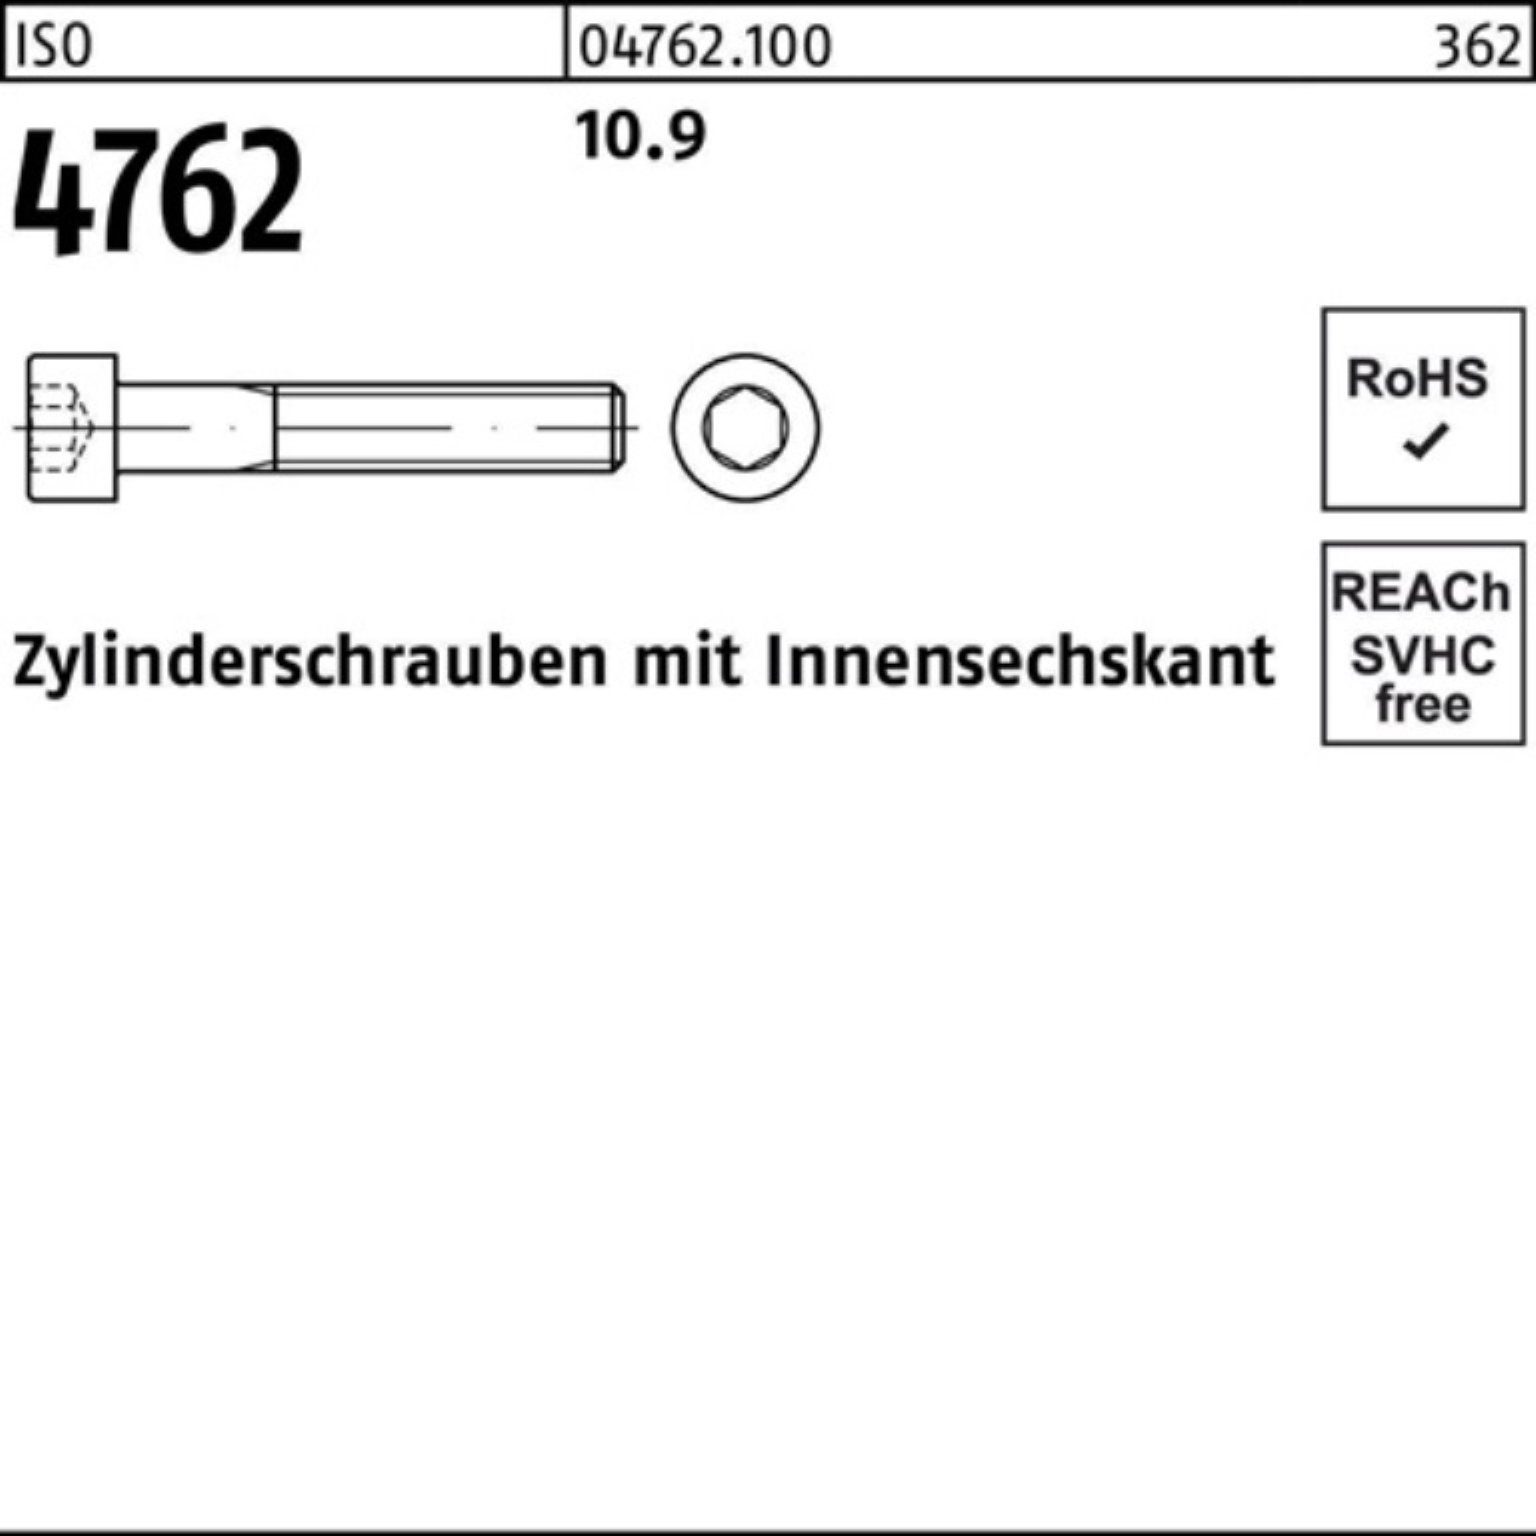 Reyher Zylinderschraube 100er 4762 Zylinderschraube Innen-6kt 300 Pack 10.9 ISO M16x Stück 25